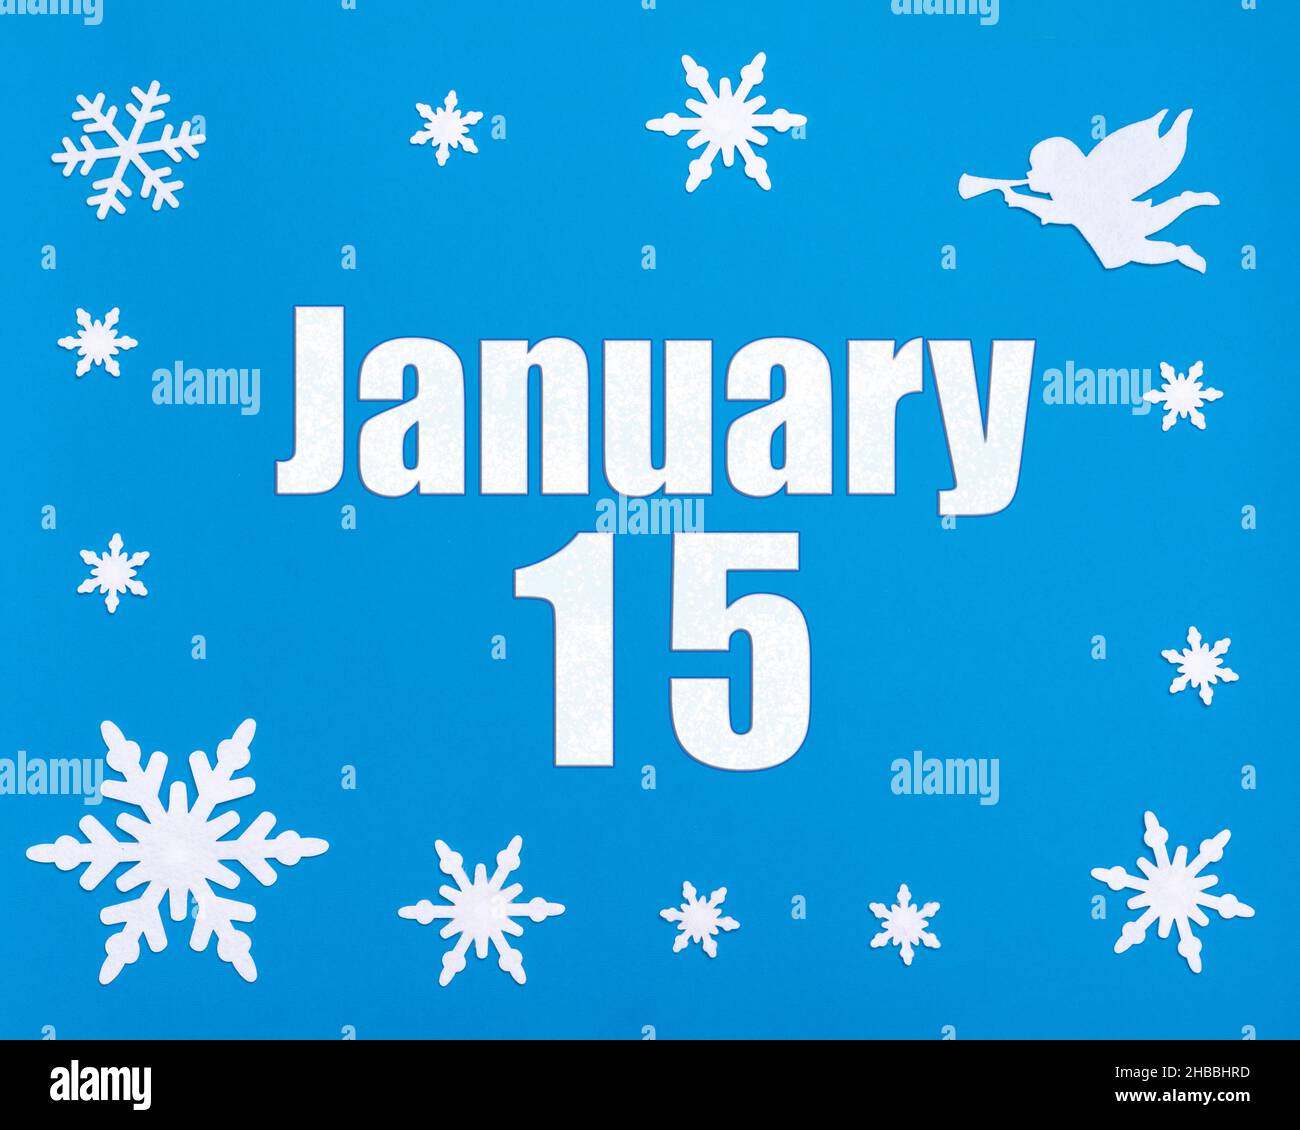 Januar 15th. Winter blauer Hintergrund mit Schneeflocken, Engel und einem Kalenderdatum. Tag 15 des Monats. Winter Monat, Tag des Jahres Konzept. Stockfoto